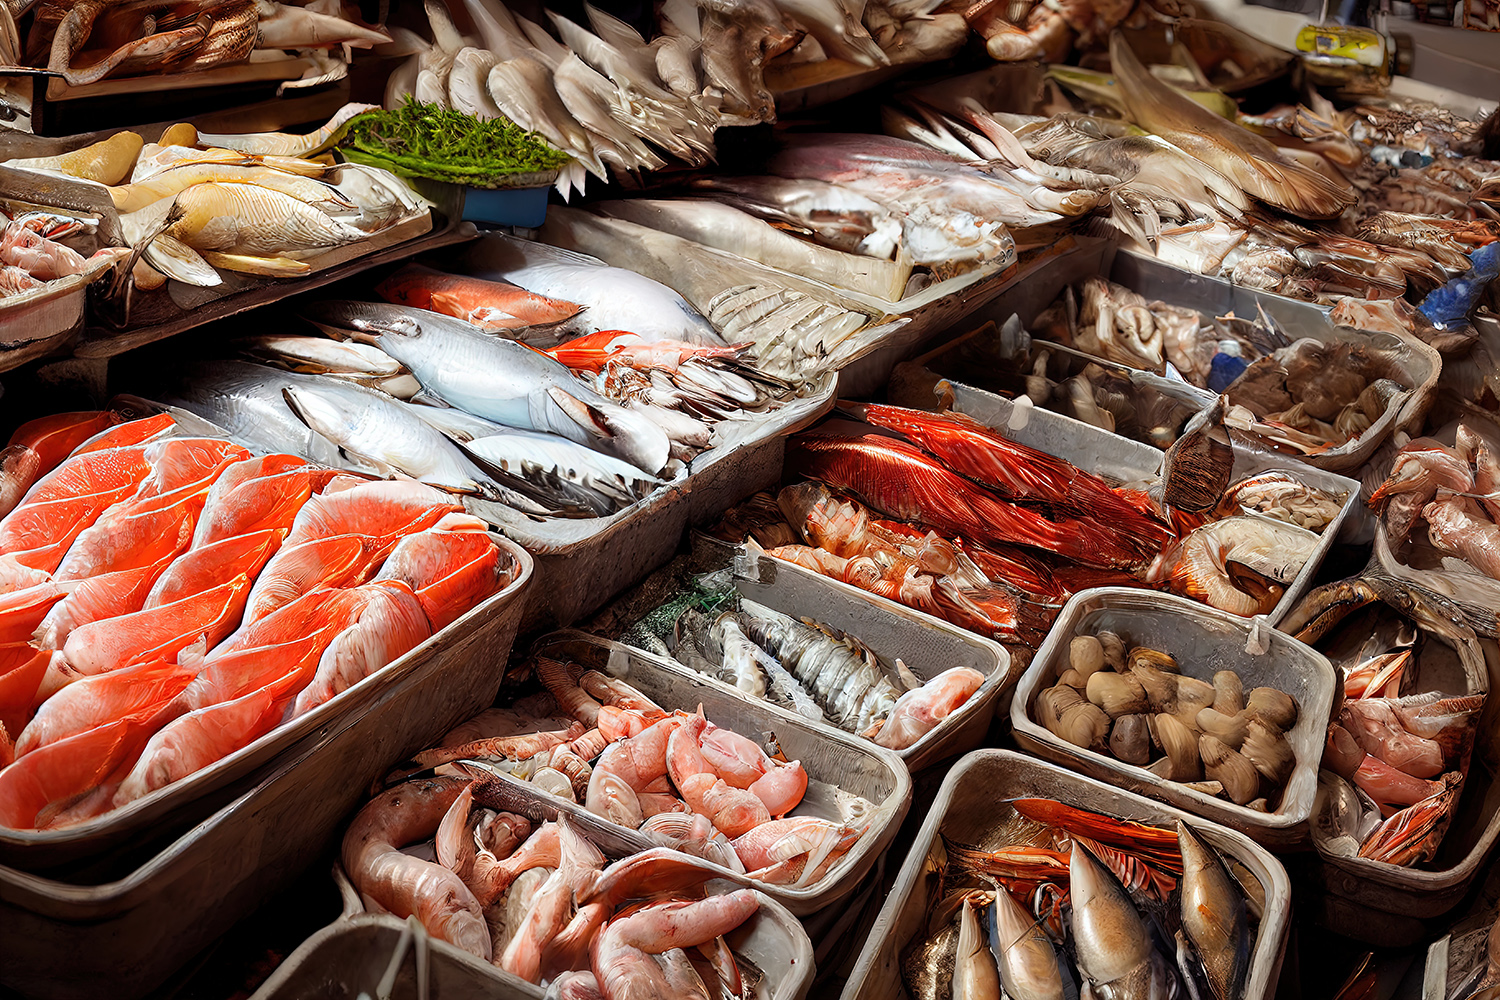 O local ideal para os clientes comprarem peixe fresco, legumes e produtos da cozinha japonesa é o Mercado de Peixe de Tsukiji